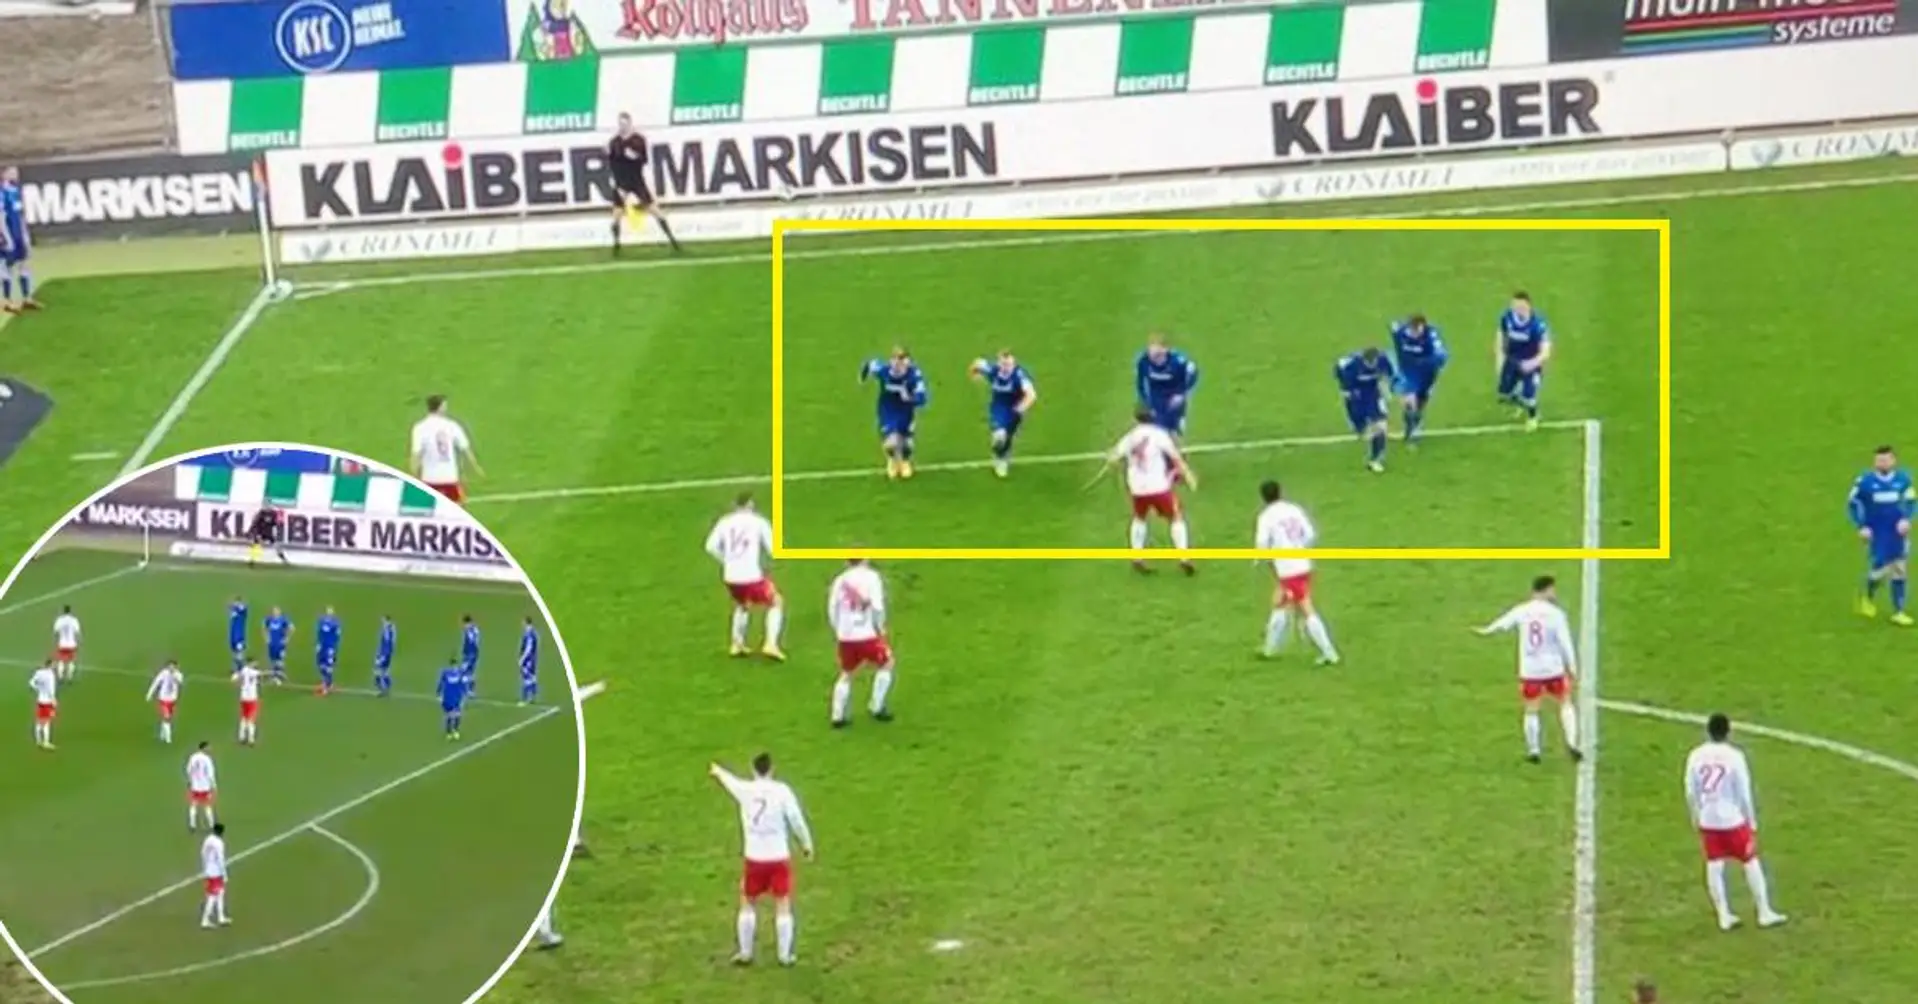 L'équipe allemande de Karlsruher étourdit ses adversaires avec une stratégie sur corner inattendue et créative